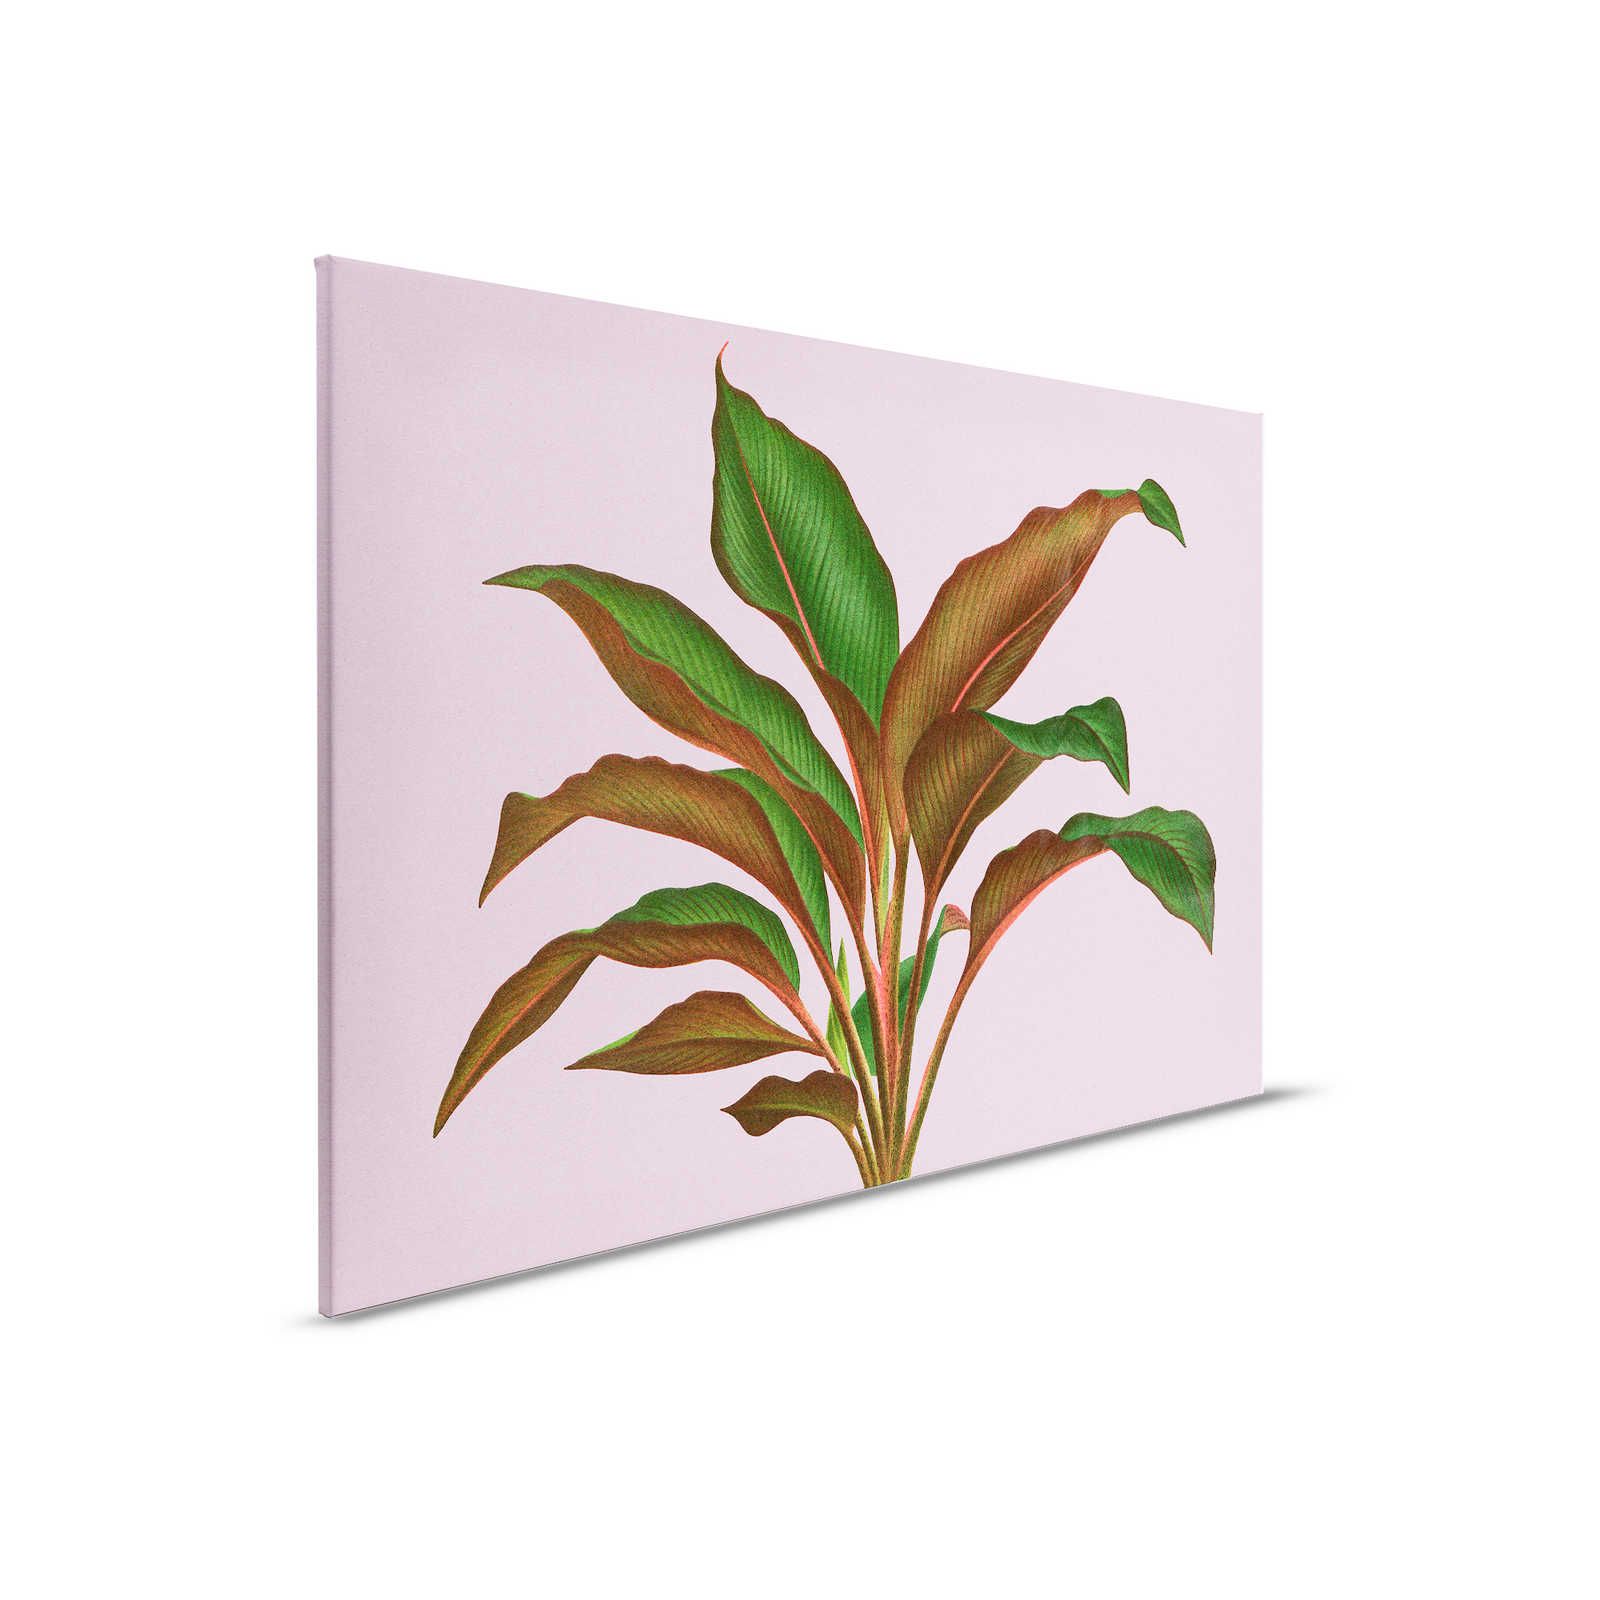 Leaf Garden 3 - Bladeren Canvas schilderij Roze met tropisch varenblad - 0.90 m x 0.60 m
